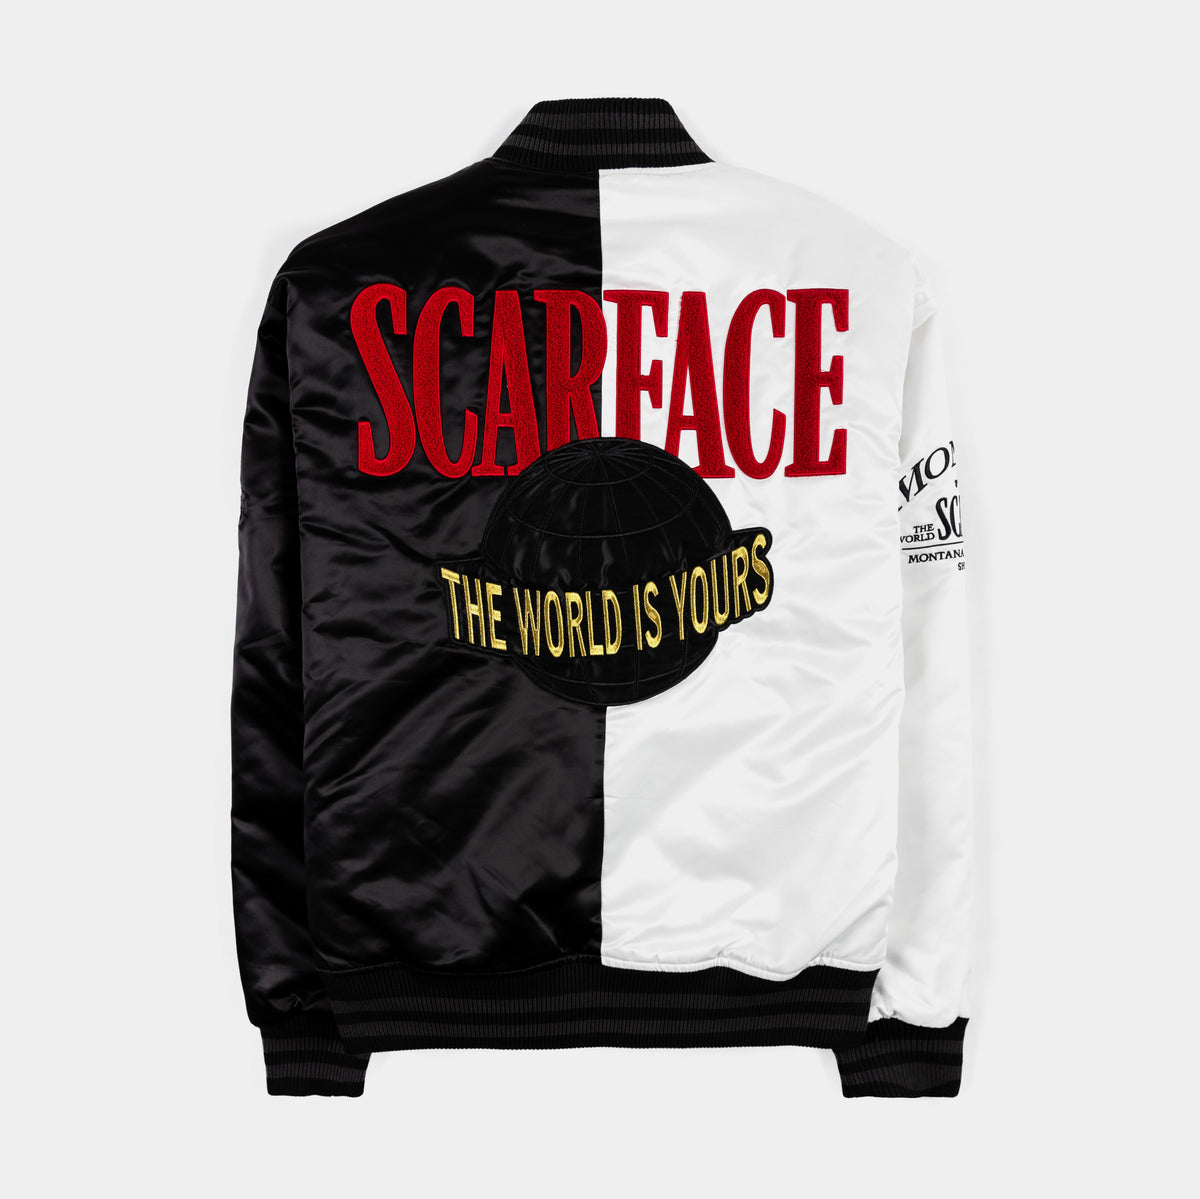 Shoe Palace SP x Scarface Varsity Mens Jacket Black White 